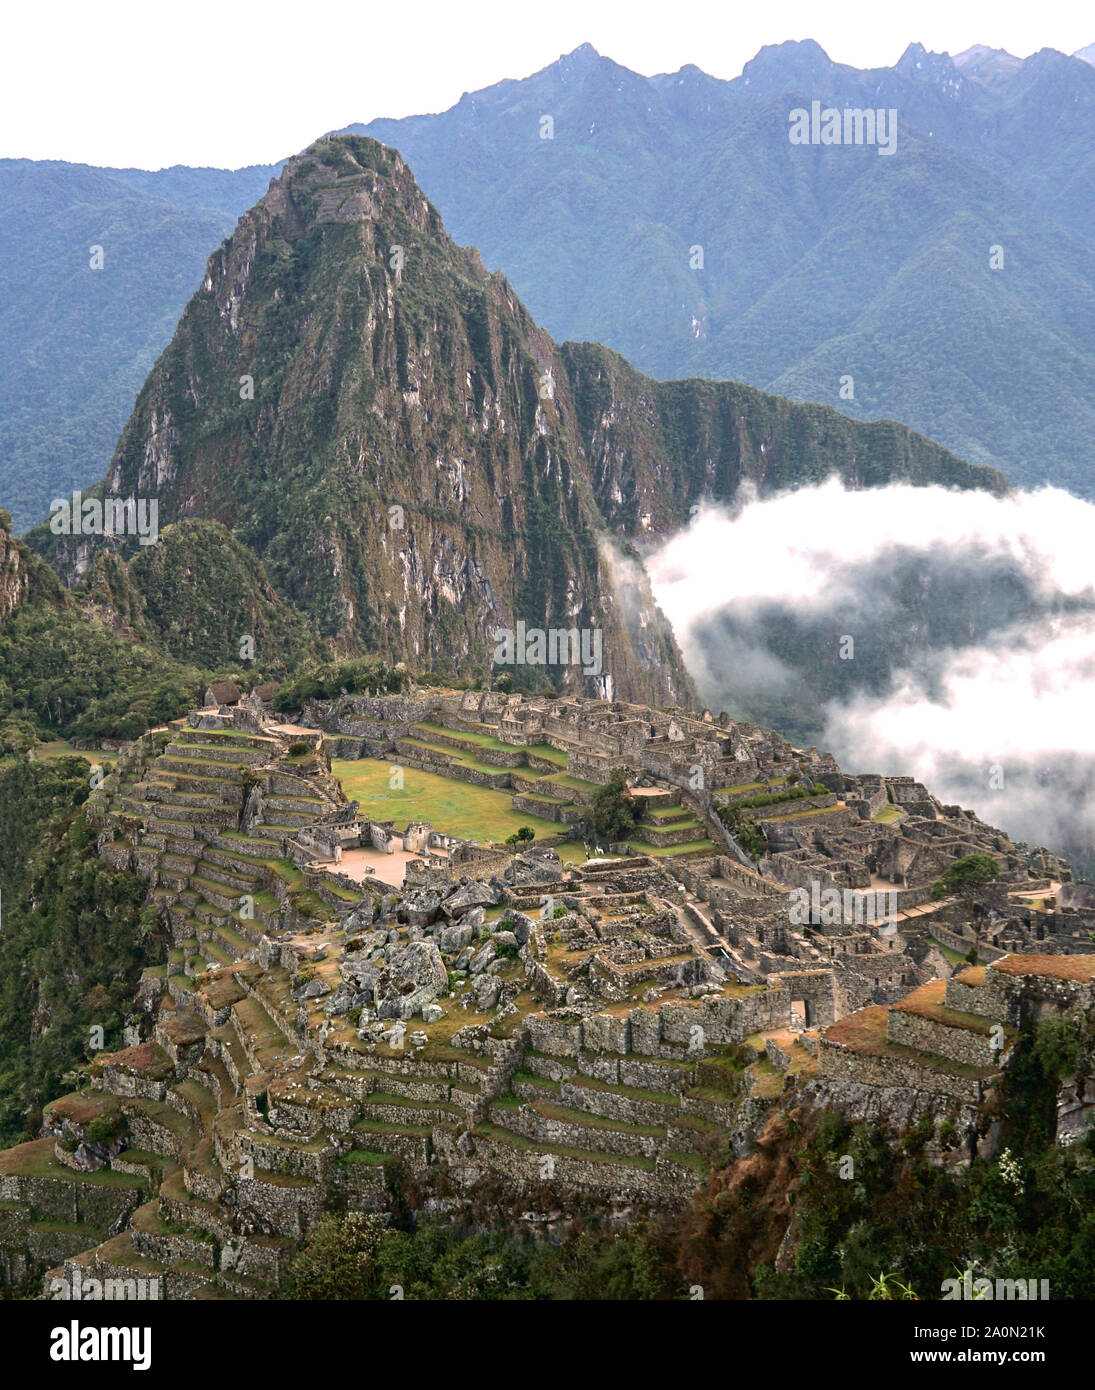 Machu Picchu è una cittadella Inca è impostata su un livello elevato nella catena delle Ande in Perù, sopra il fiume Urubamba valley. Costruito nel XV secolo e successivamente abbandonato, è rinomato per la sua sofisticata muretti a secco che il fusibile enormi blocchi senza l'uso di mortaio, intriganti edifici che giocare su allineamenti astronomici e viste panoramiche. Il suo esatto ex uso rimane un mistero. Esso si erge 7,970 piedi (2.430 metri sopra il livello del mare sul versante orientale delle Ande Foto Stock